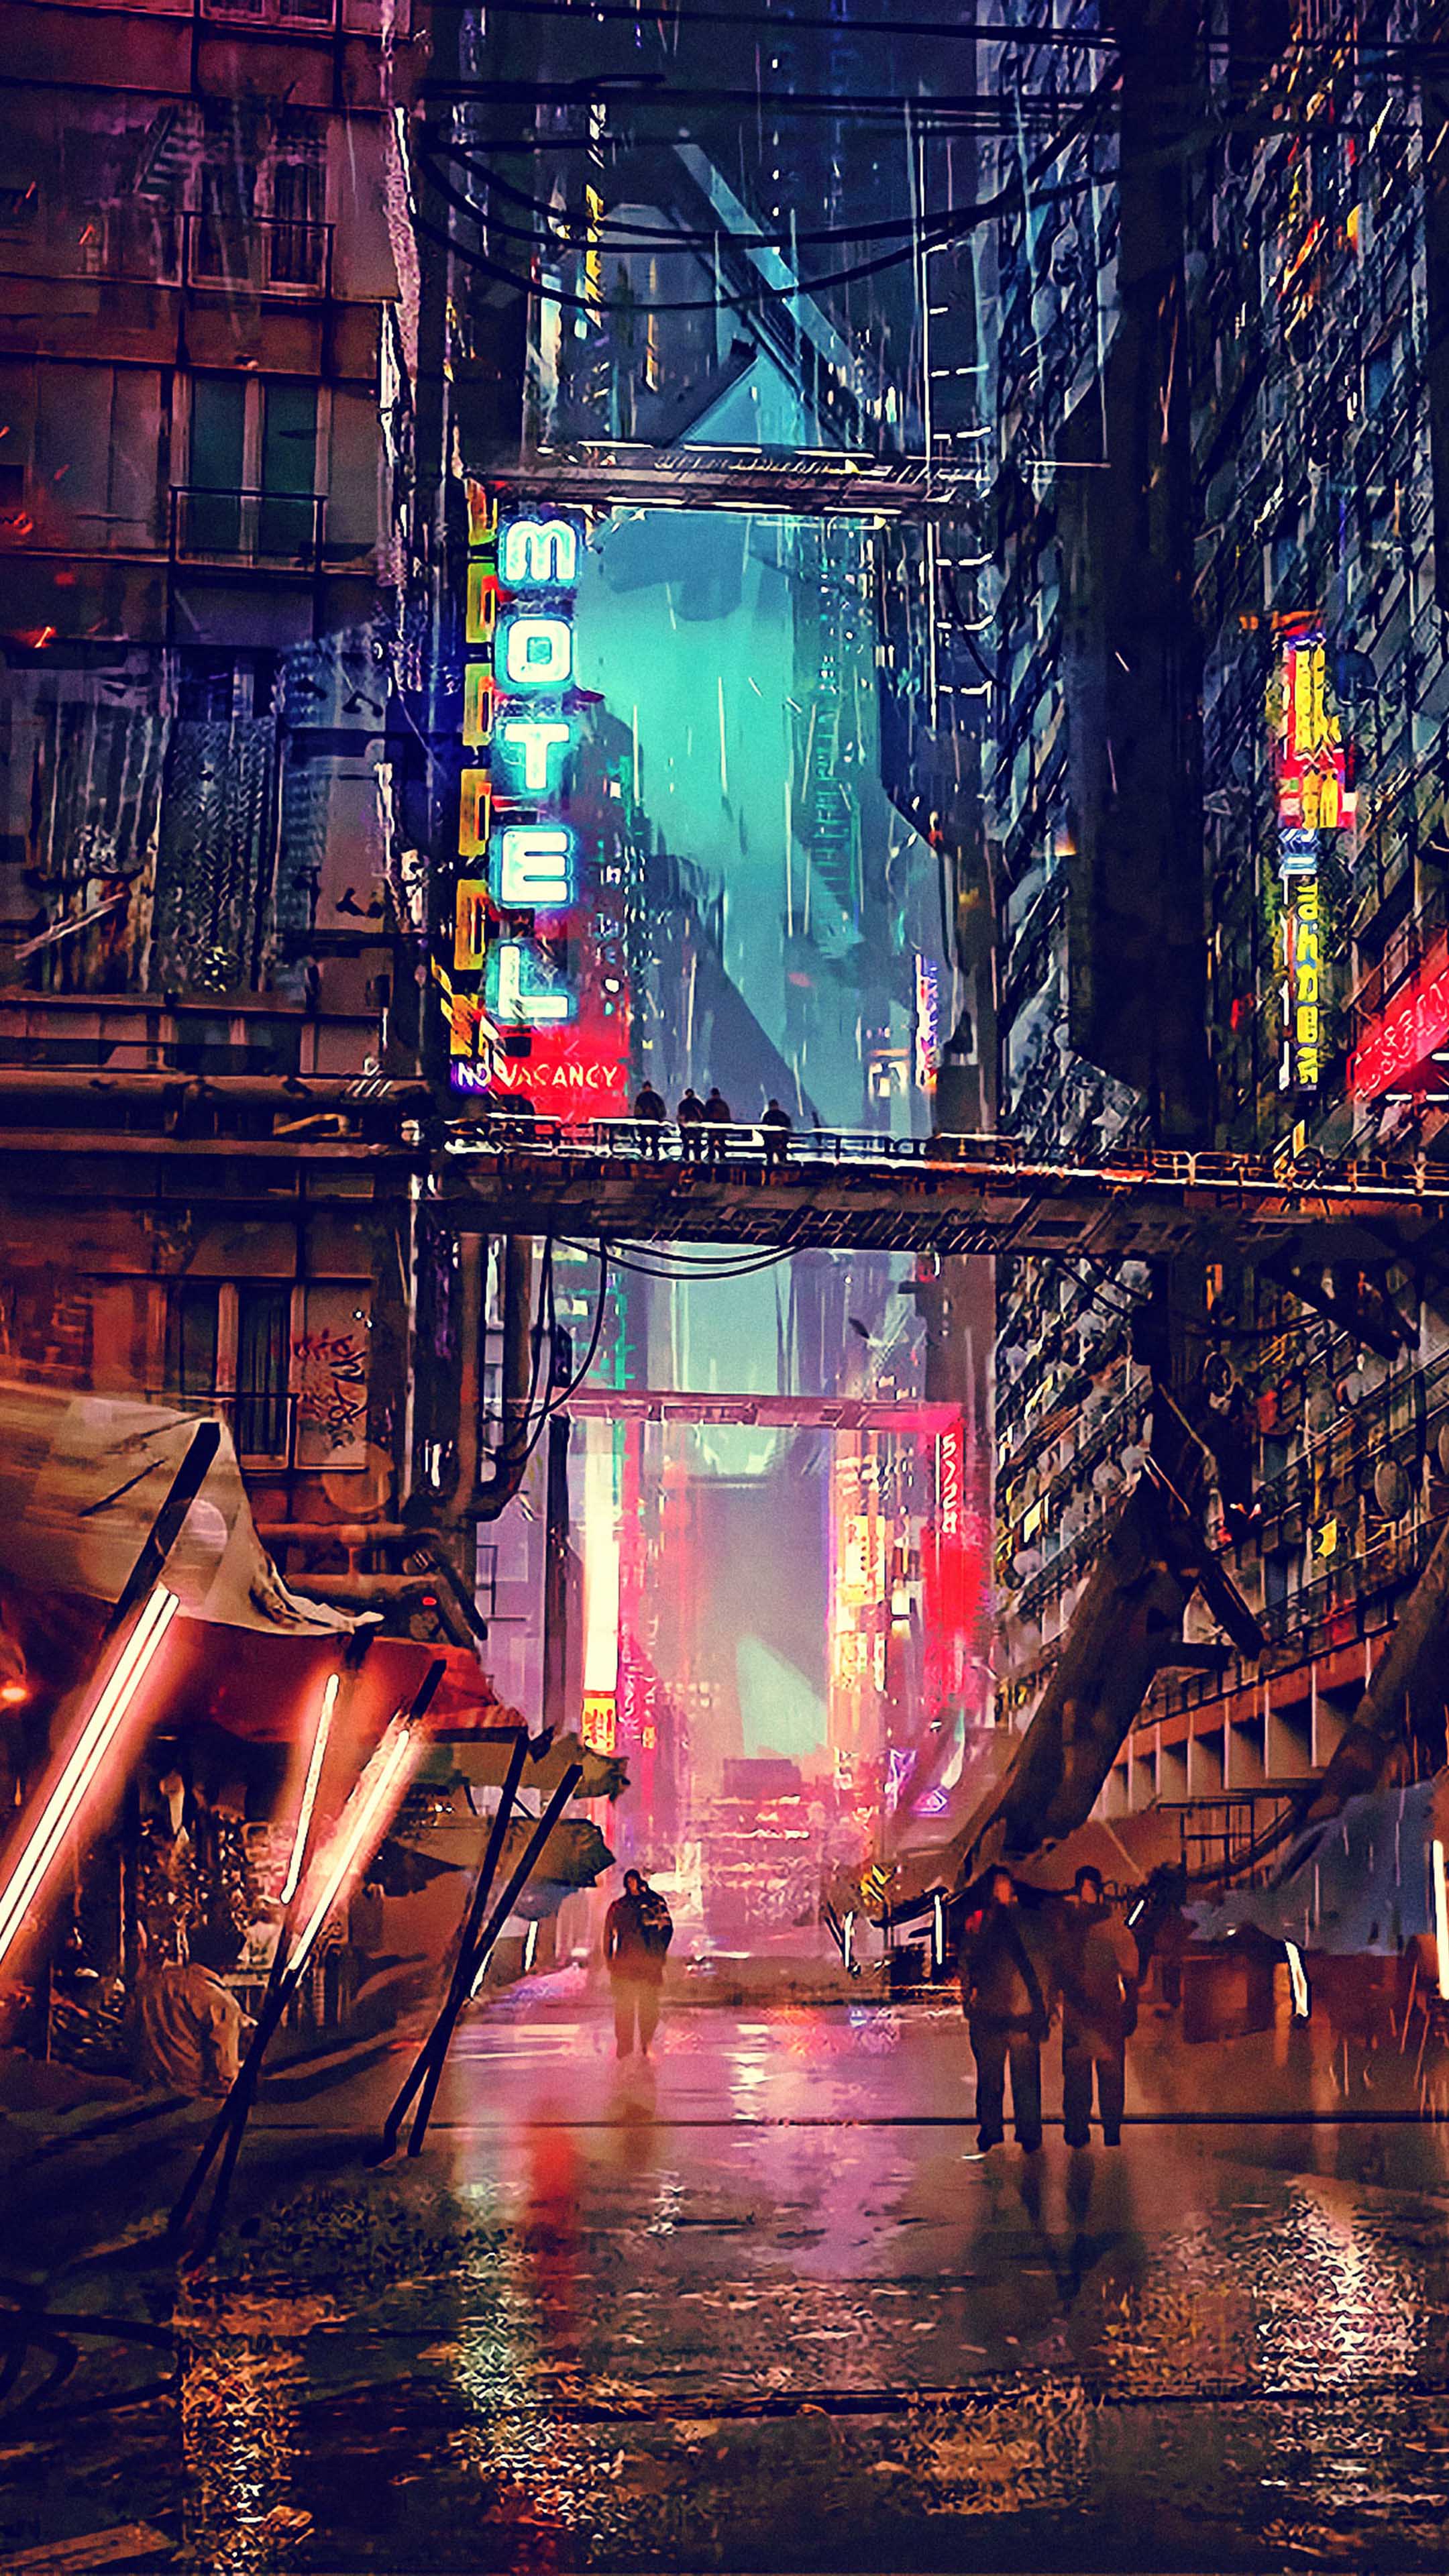 Khám phá thế giới Cyberpunk với những bức tranh kỹ thuật số hoành tráng, những tòa nhà cao tầng phủ đầy công nghệ nhưng lại trong hoang tàn của tương lai.